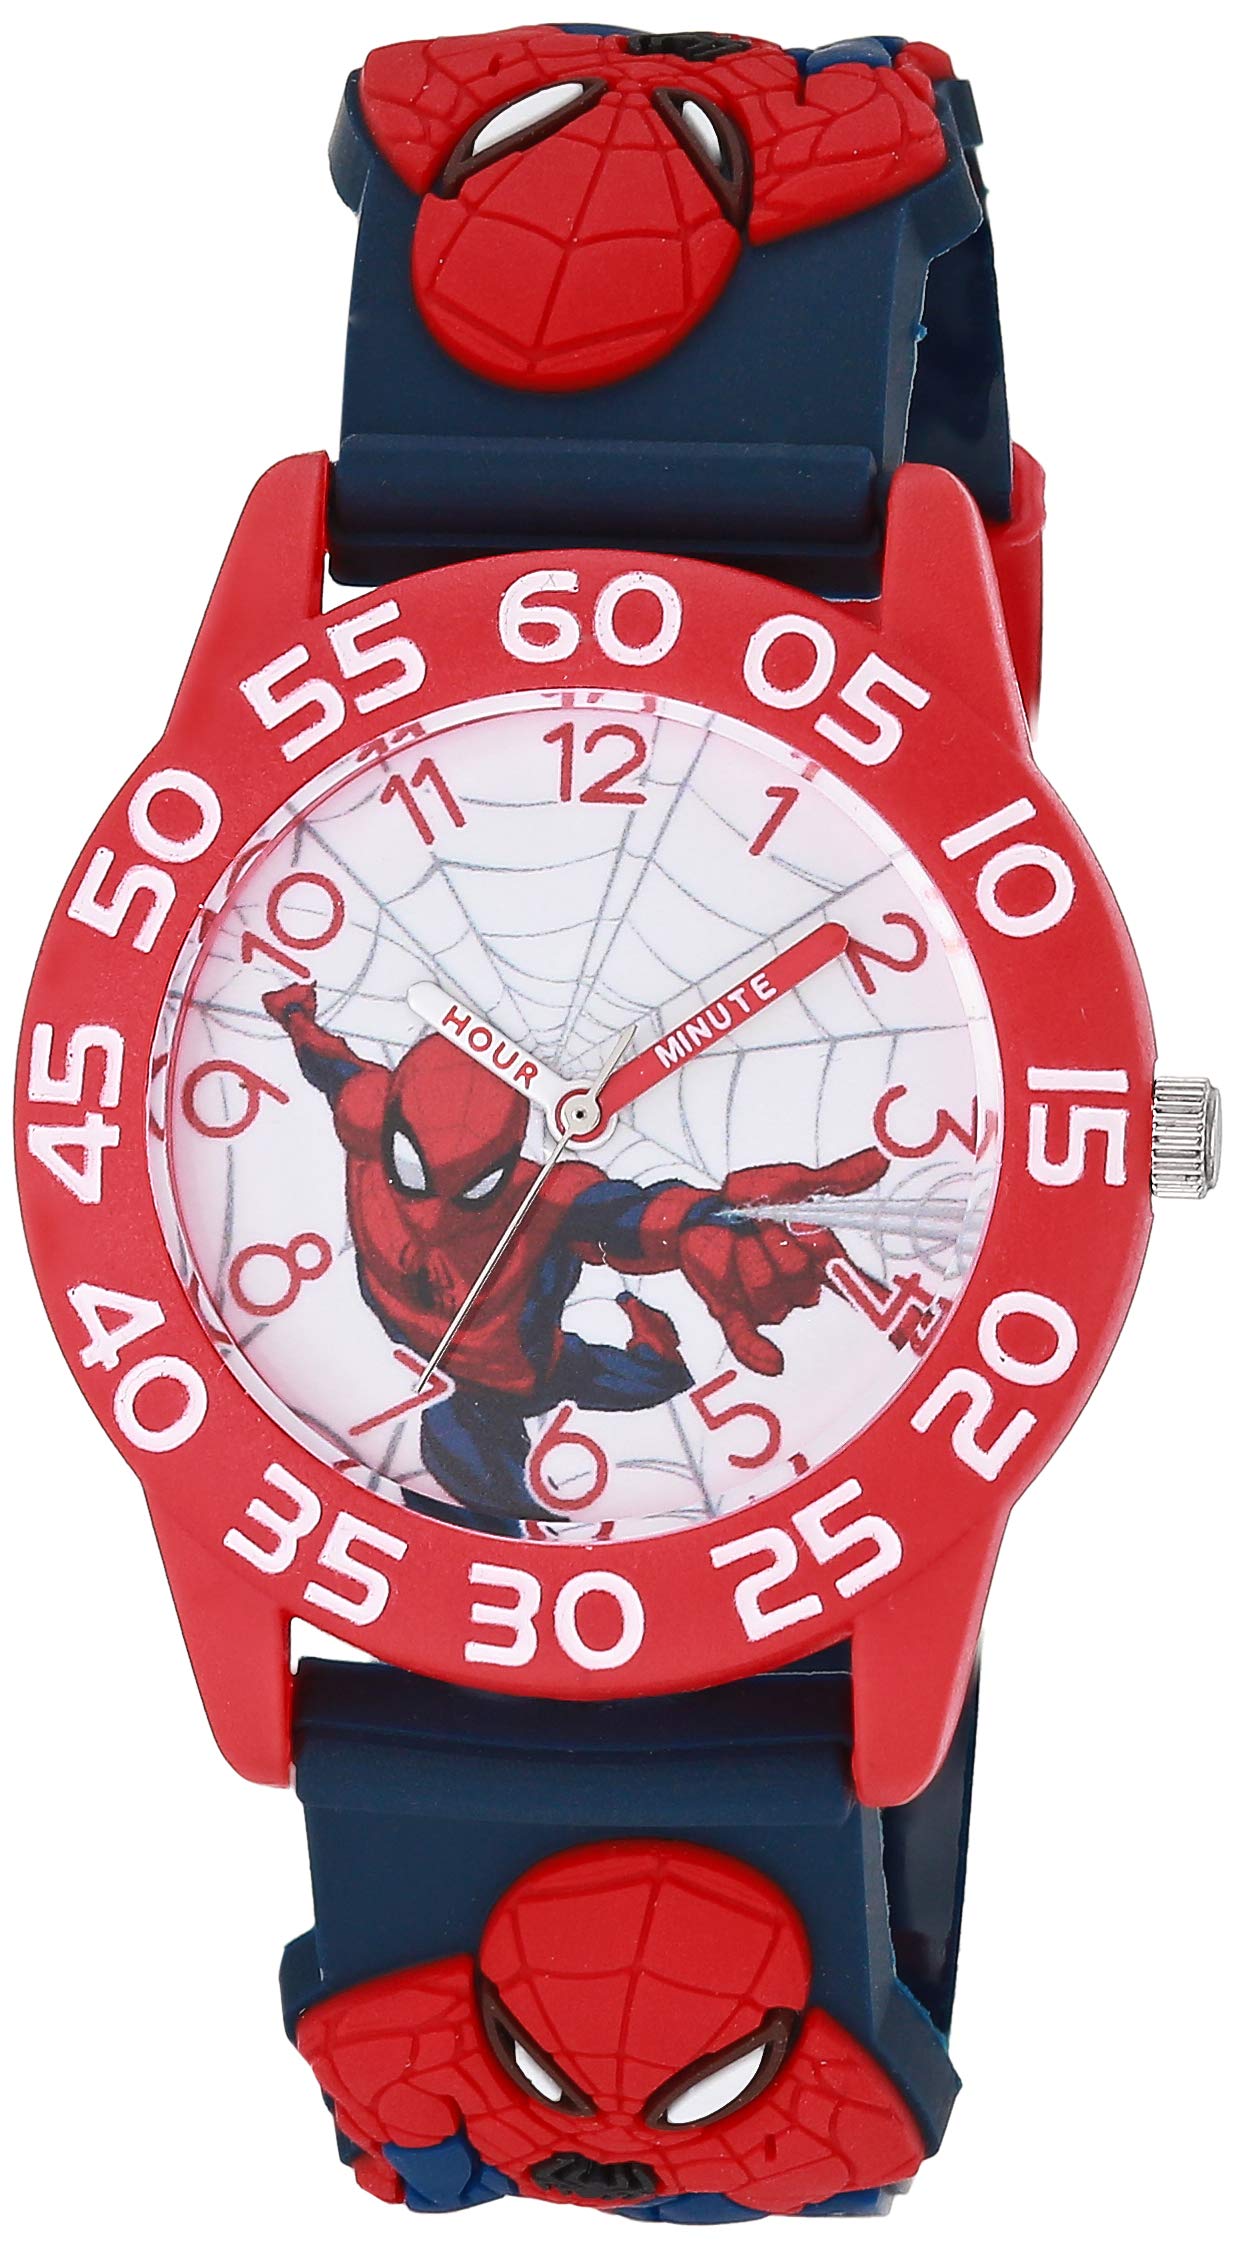 Marvel Spider-Man Boys' Red Plastic Time Teacher Watch, Spider-Man 3D Strap, WMA000413